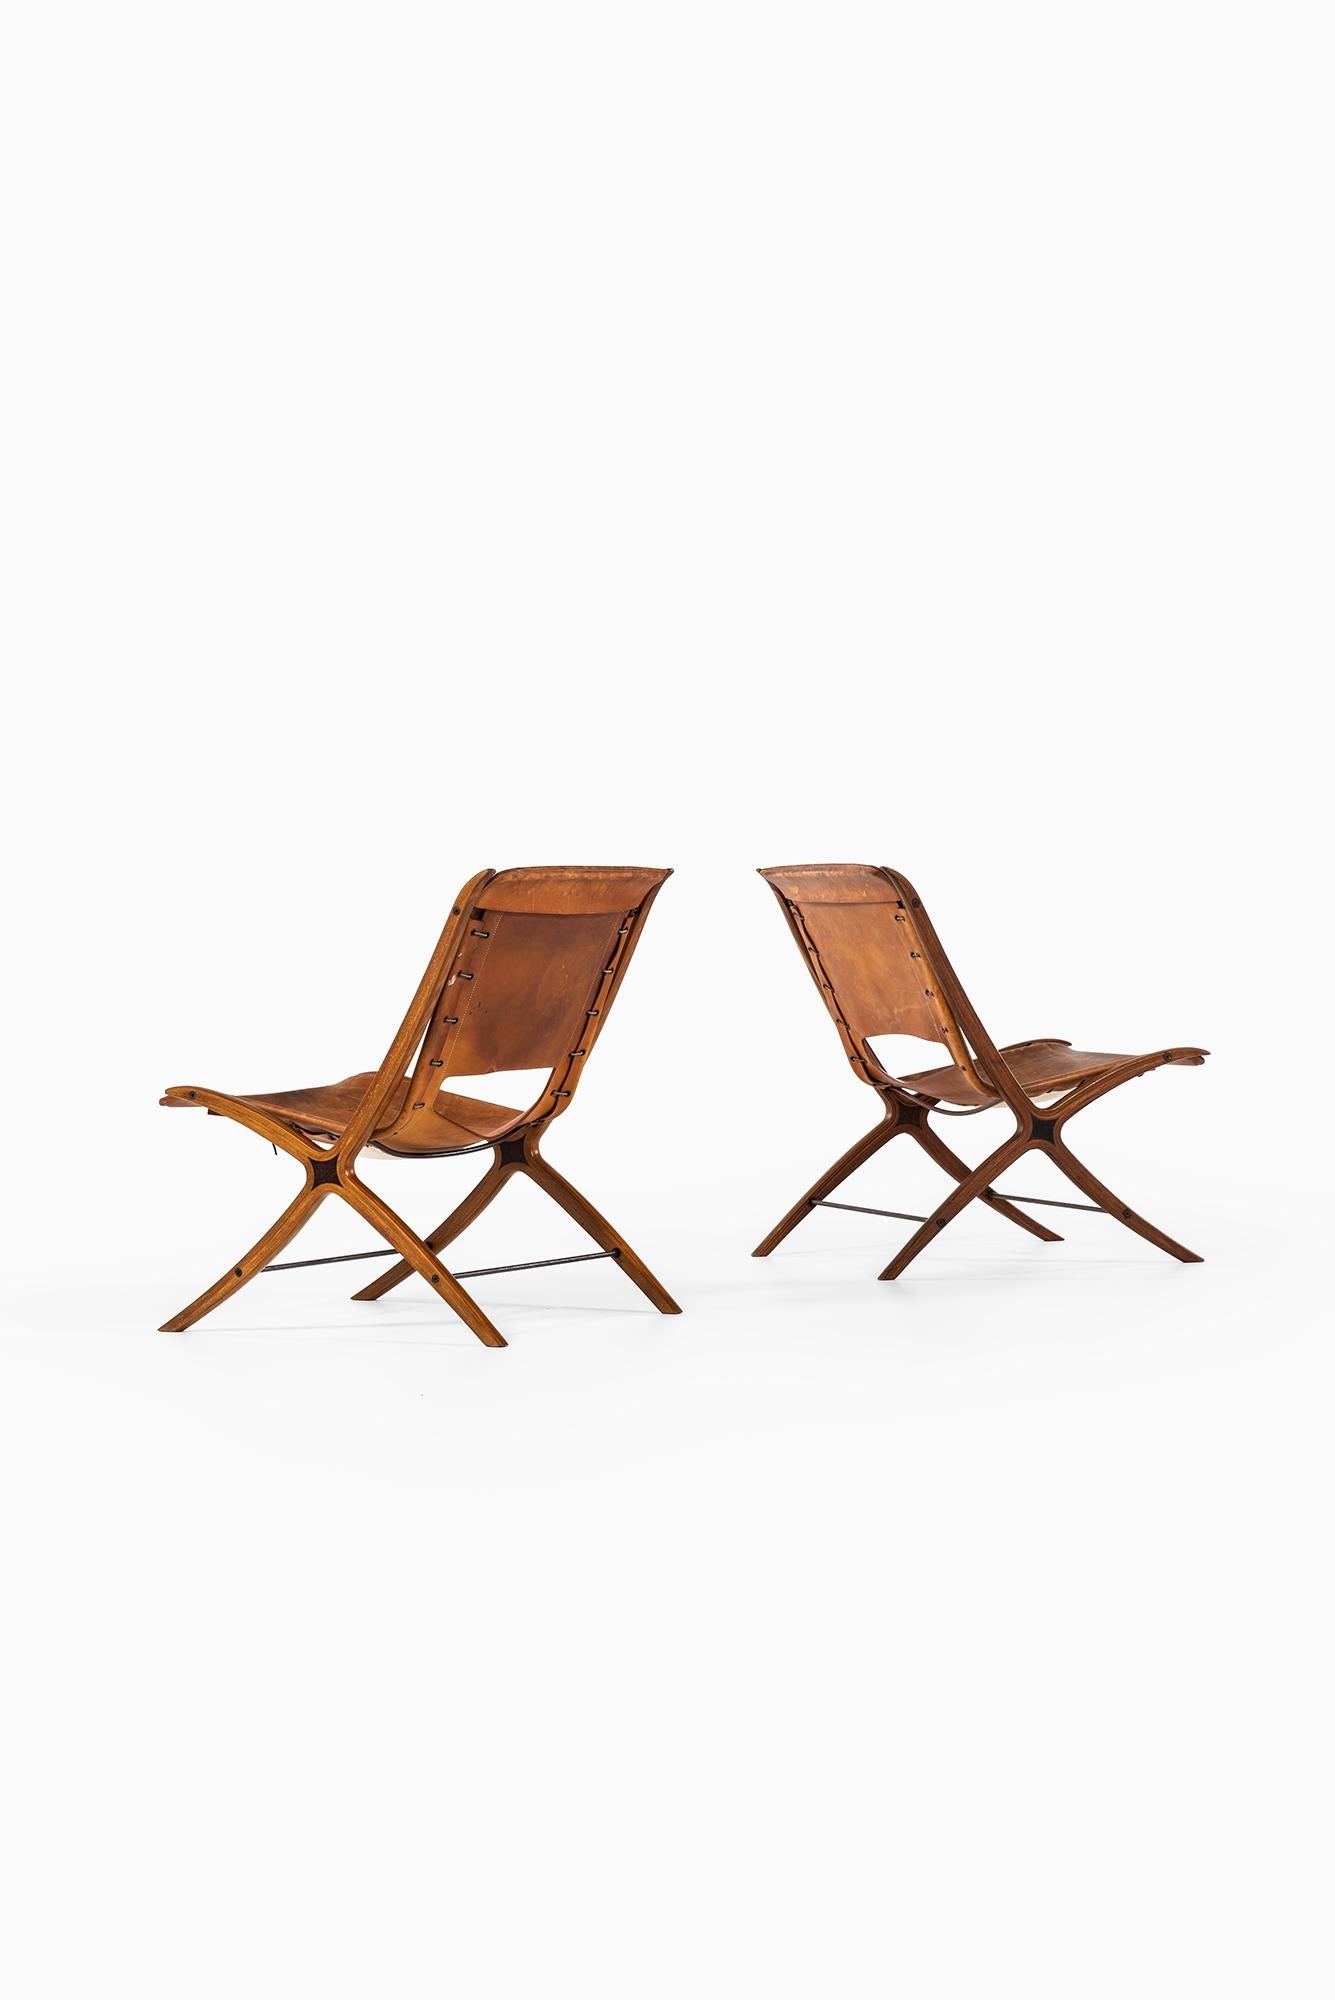 Peter Hvidt & Orla Mølgaard-Nielsen x Easy Chair by Fritz Hansen in Denmark For Sale 6